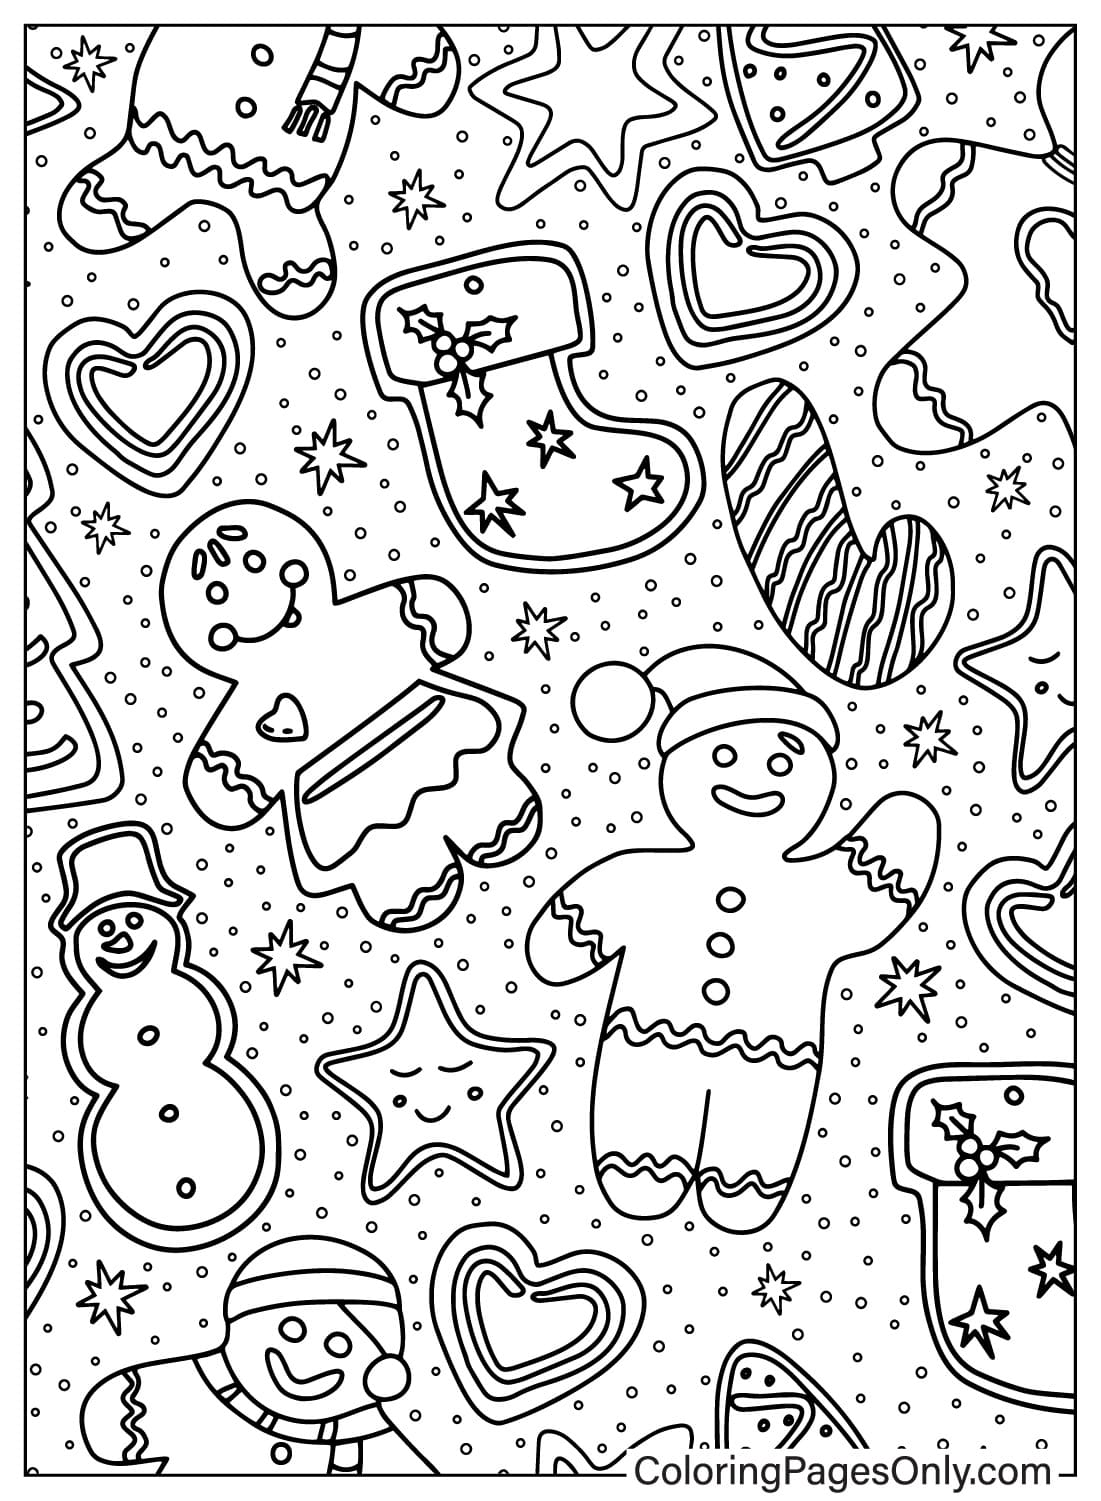 Página para colorear de patrones navideños para imprimir a partir de patrones navideños